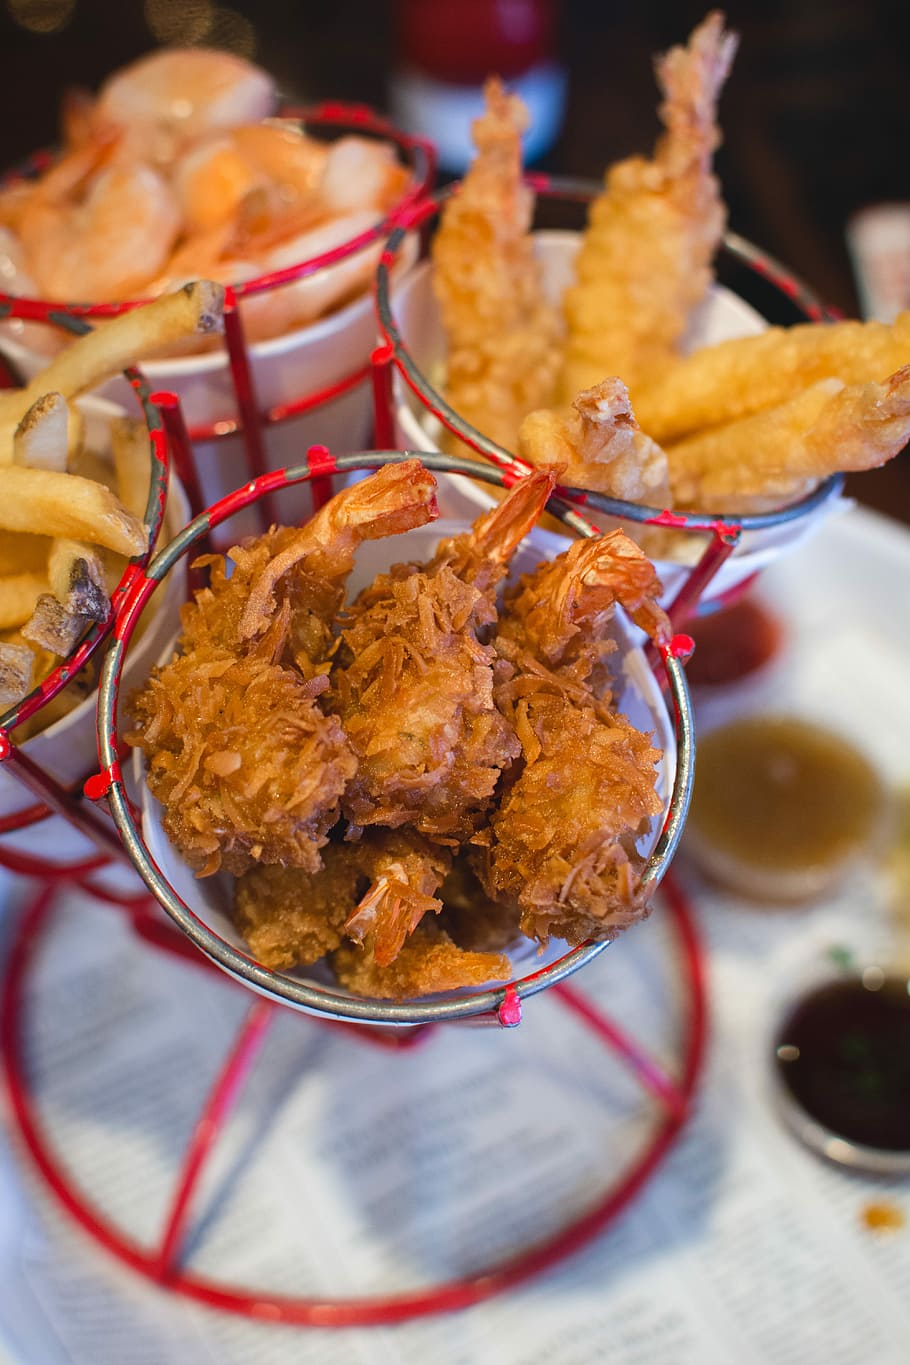 shrimp dishes, bubba gump restaurant, Shrimp, dishes, restaurant, close up, eating out, fried, shrimps, food